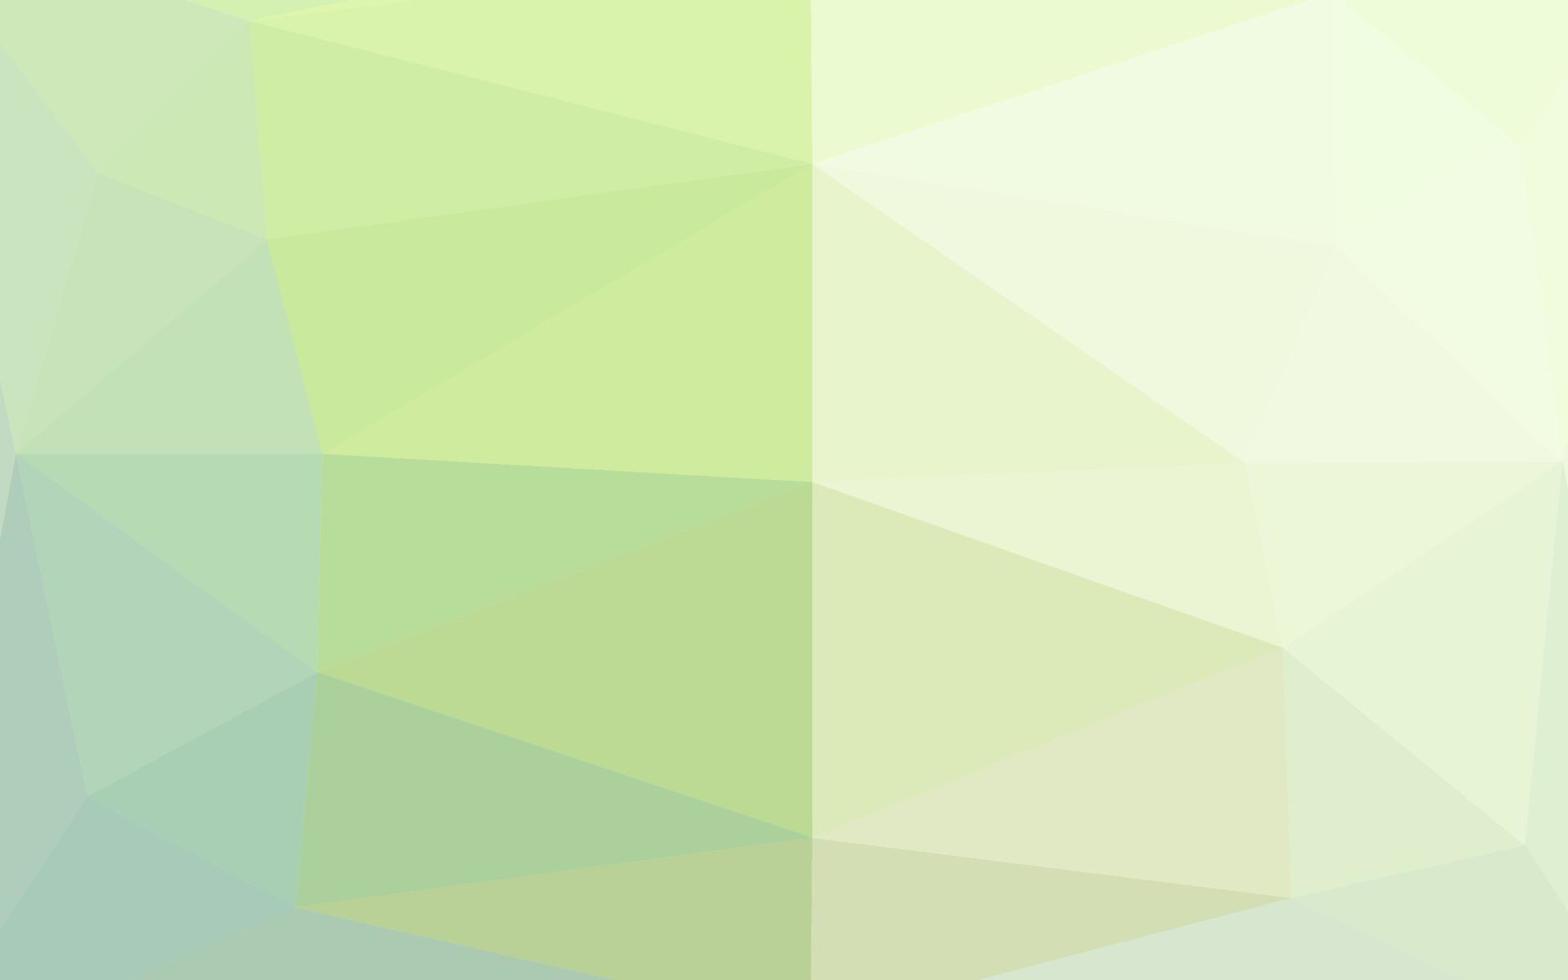 plantilla de triángulo borroso vector verde claro.